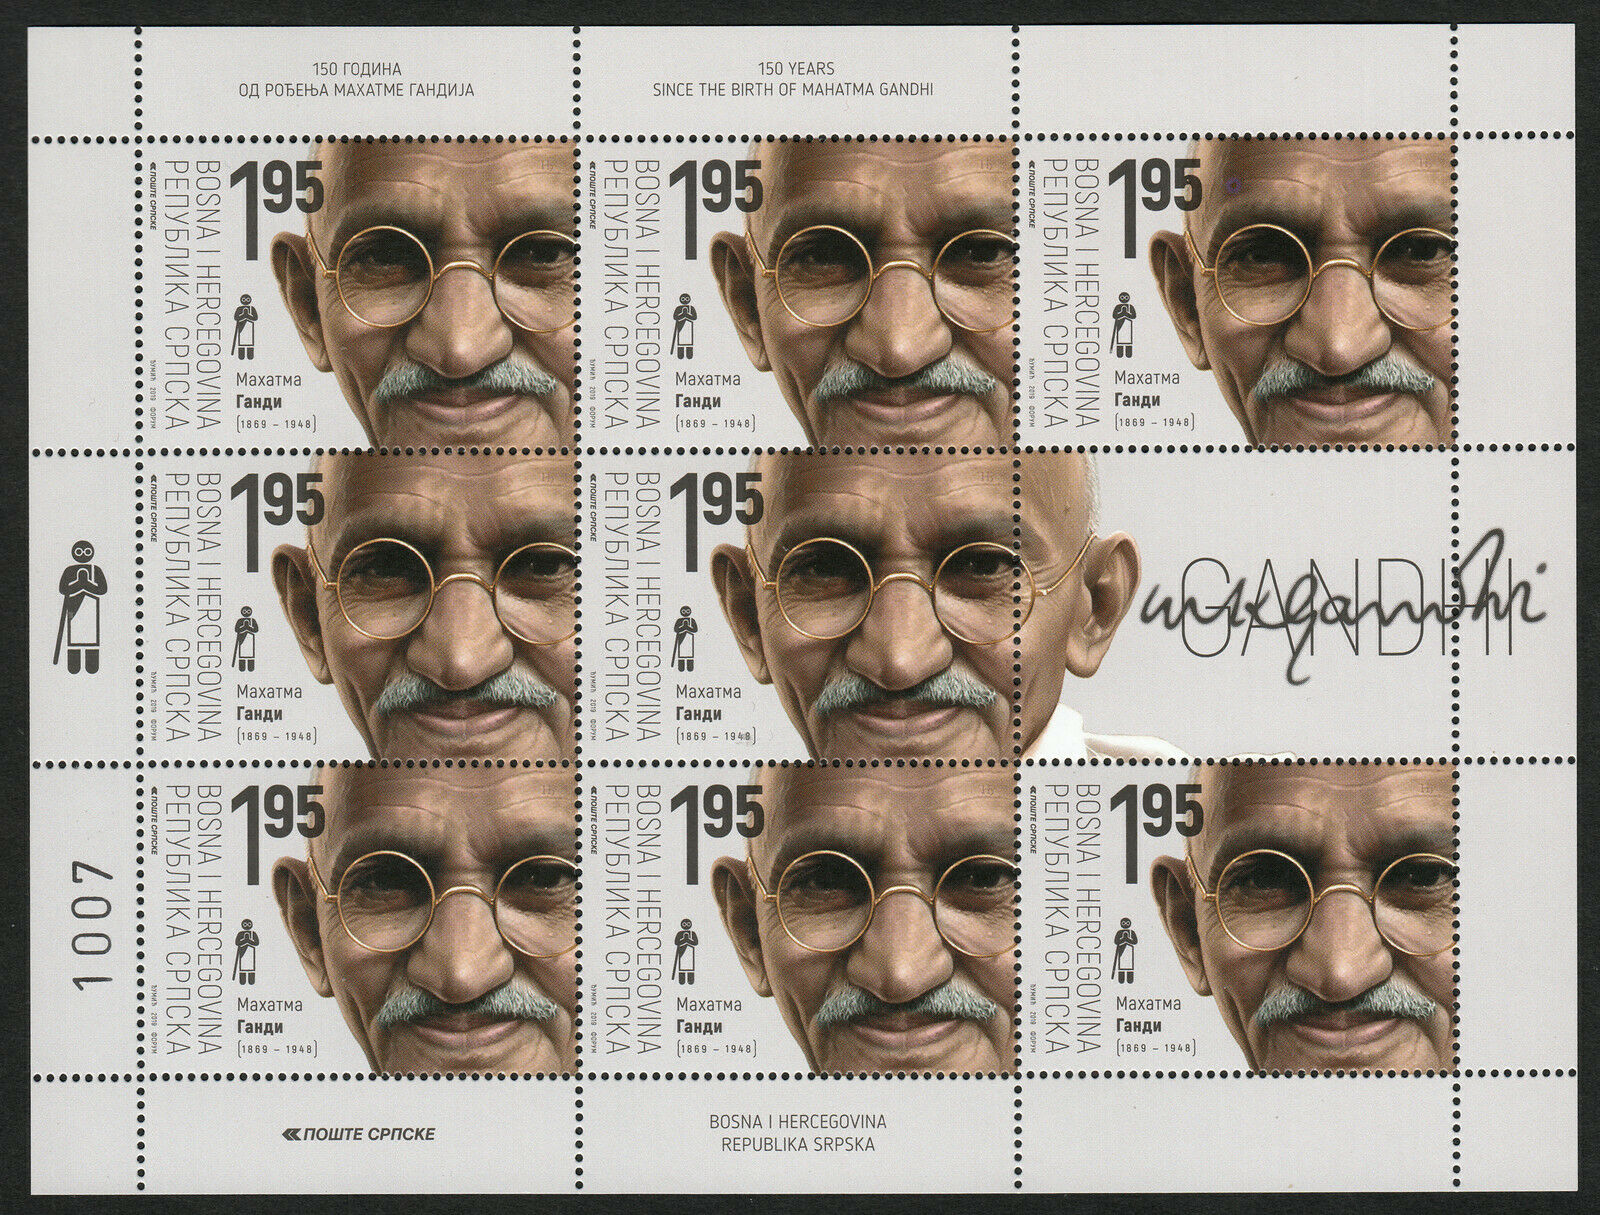 Bosnia 2019 Stamps Sheet Birth Anniversary of Mahatma Gandhi